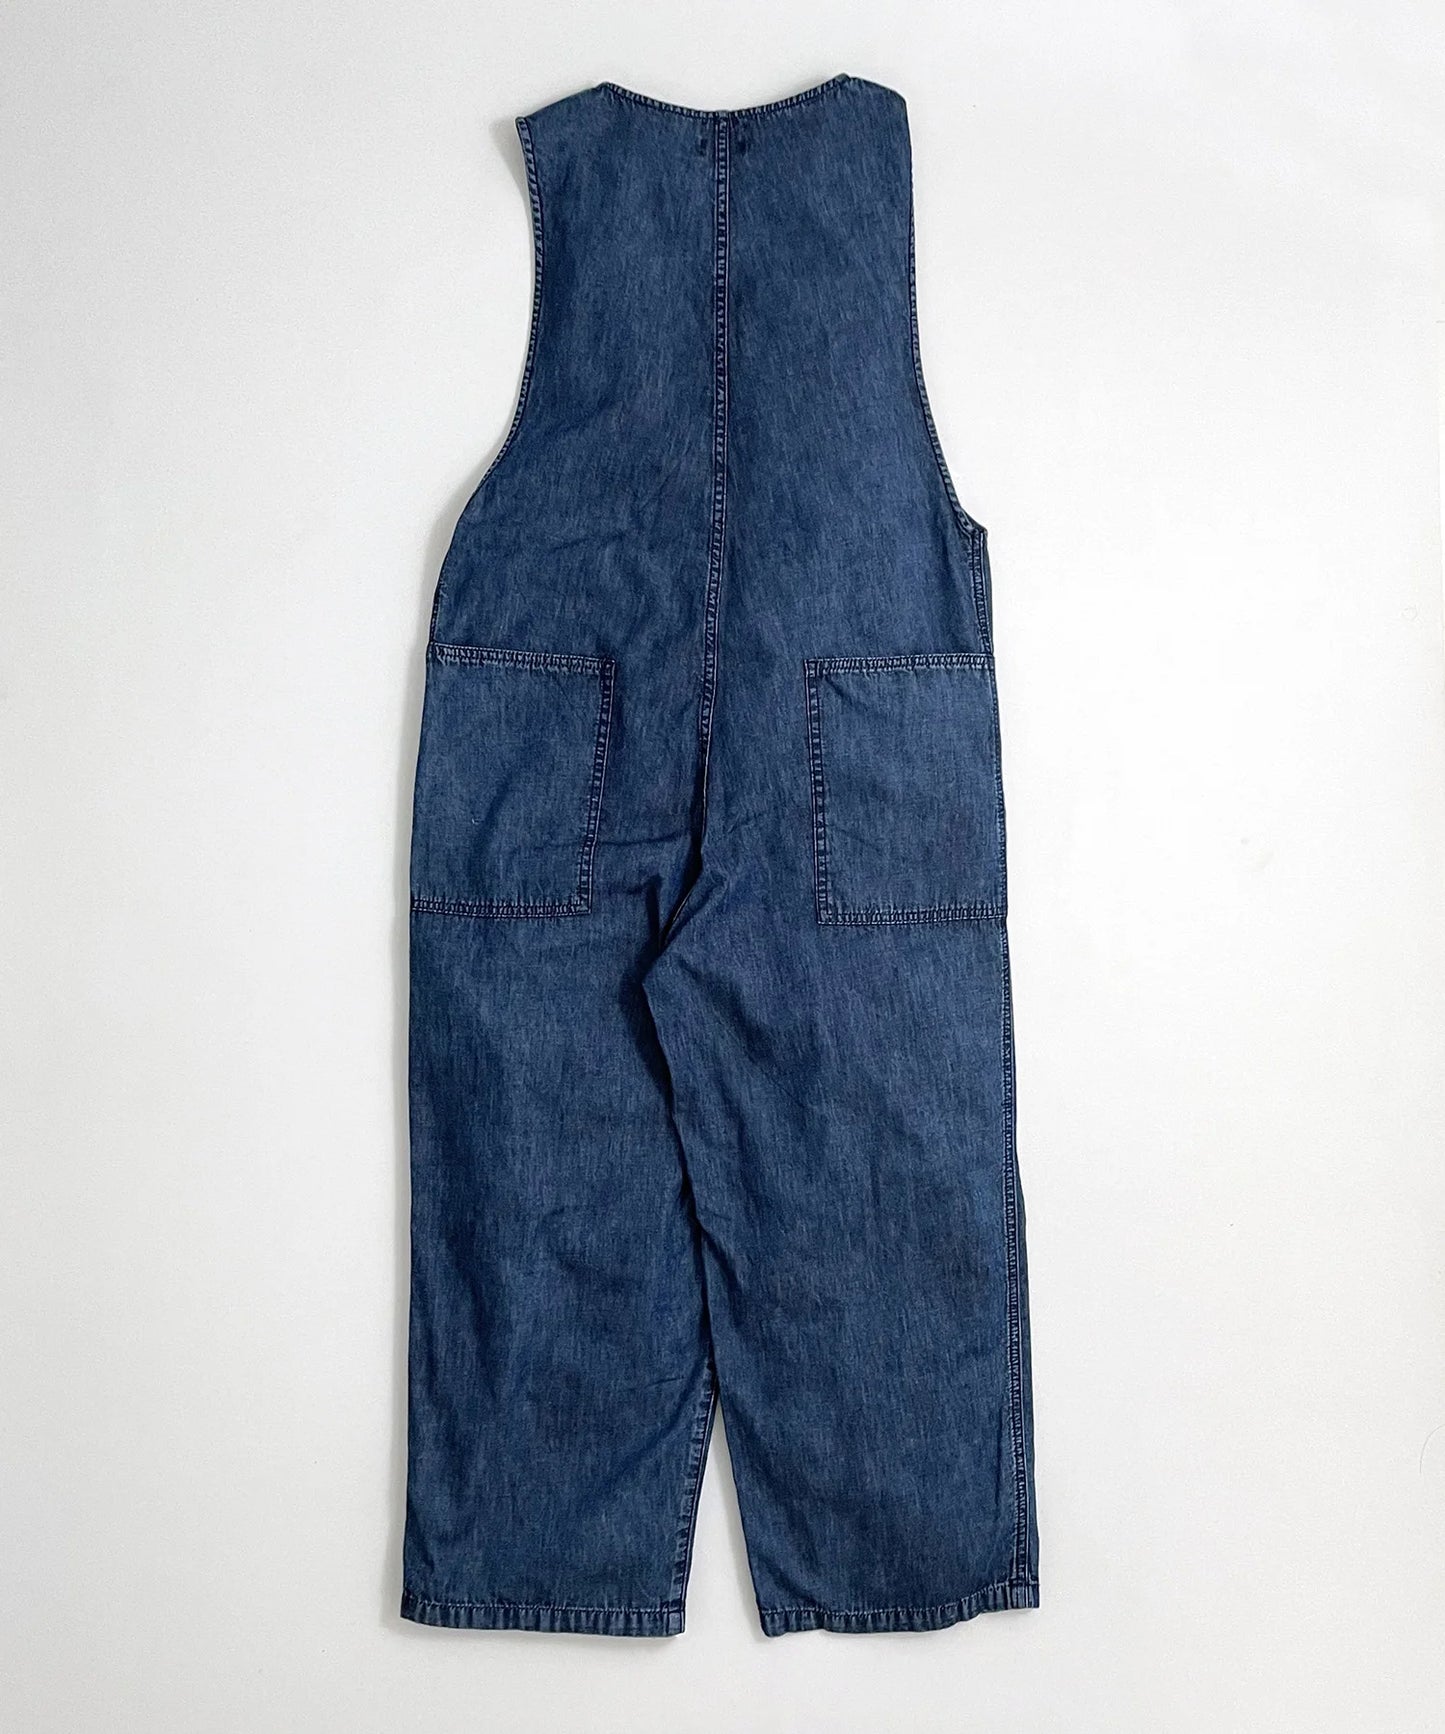 淺色牛仔背帶褲 一體成型薄布料 [100-145cm]